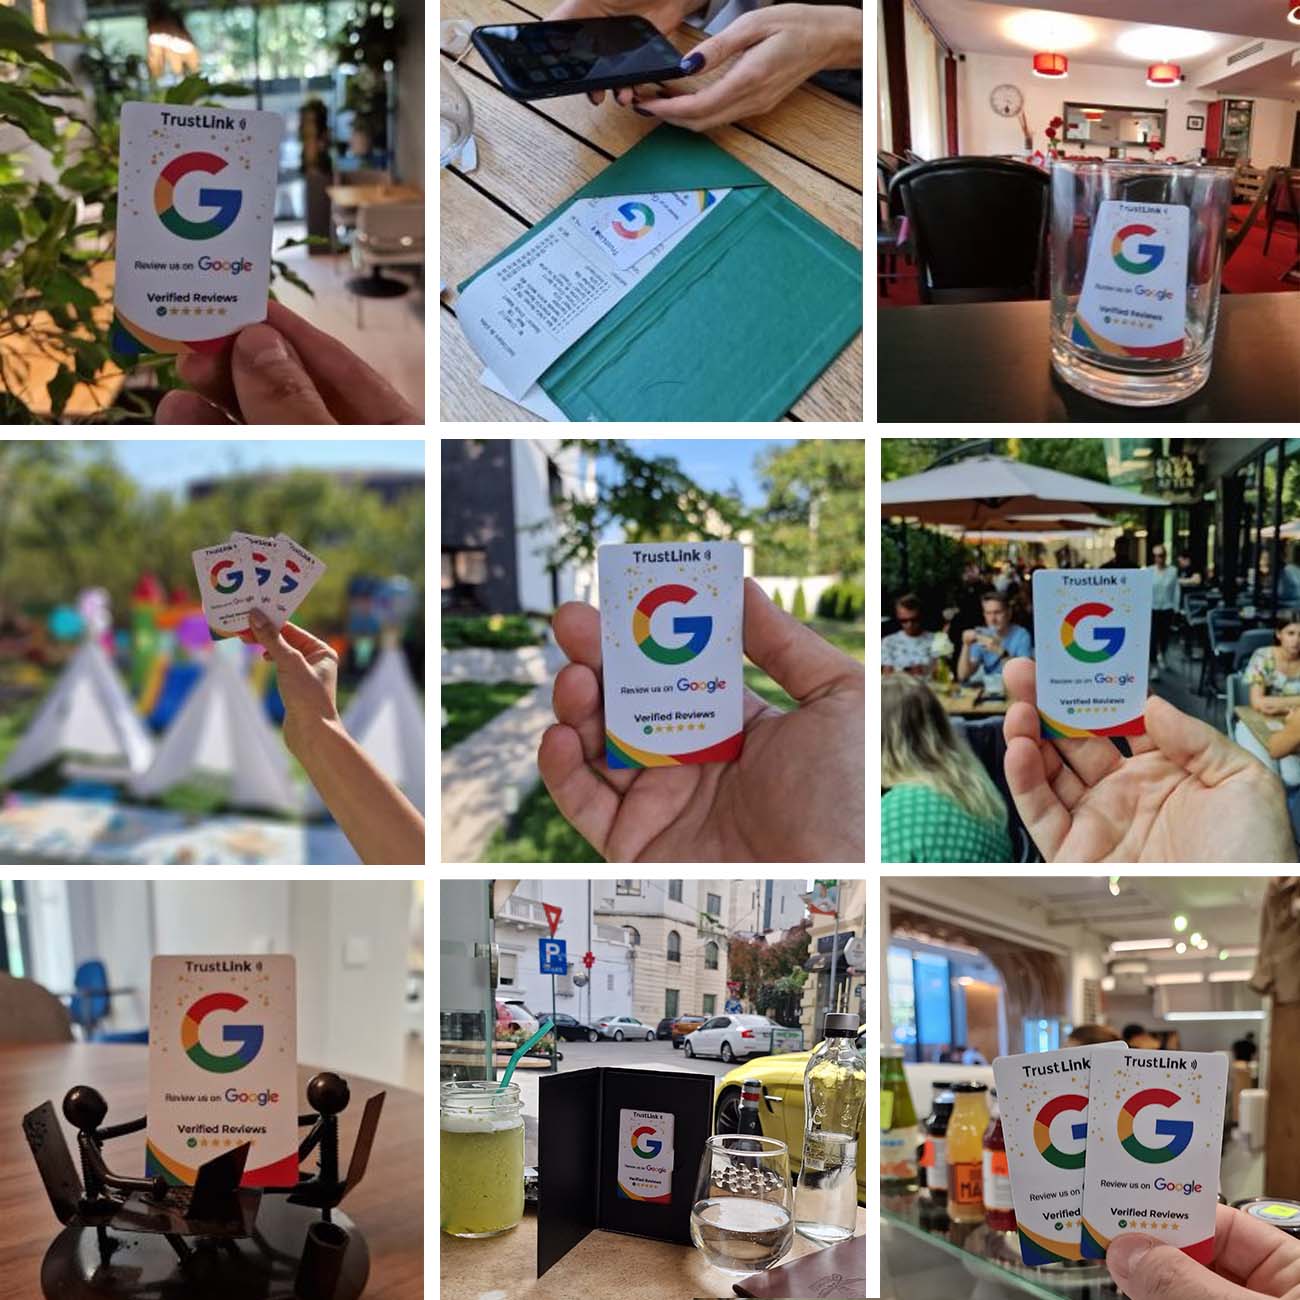 Imagini de la clientii care au cumparat cardul pentru recenzii google - TrustLink